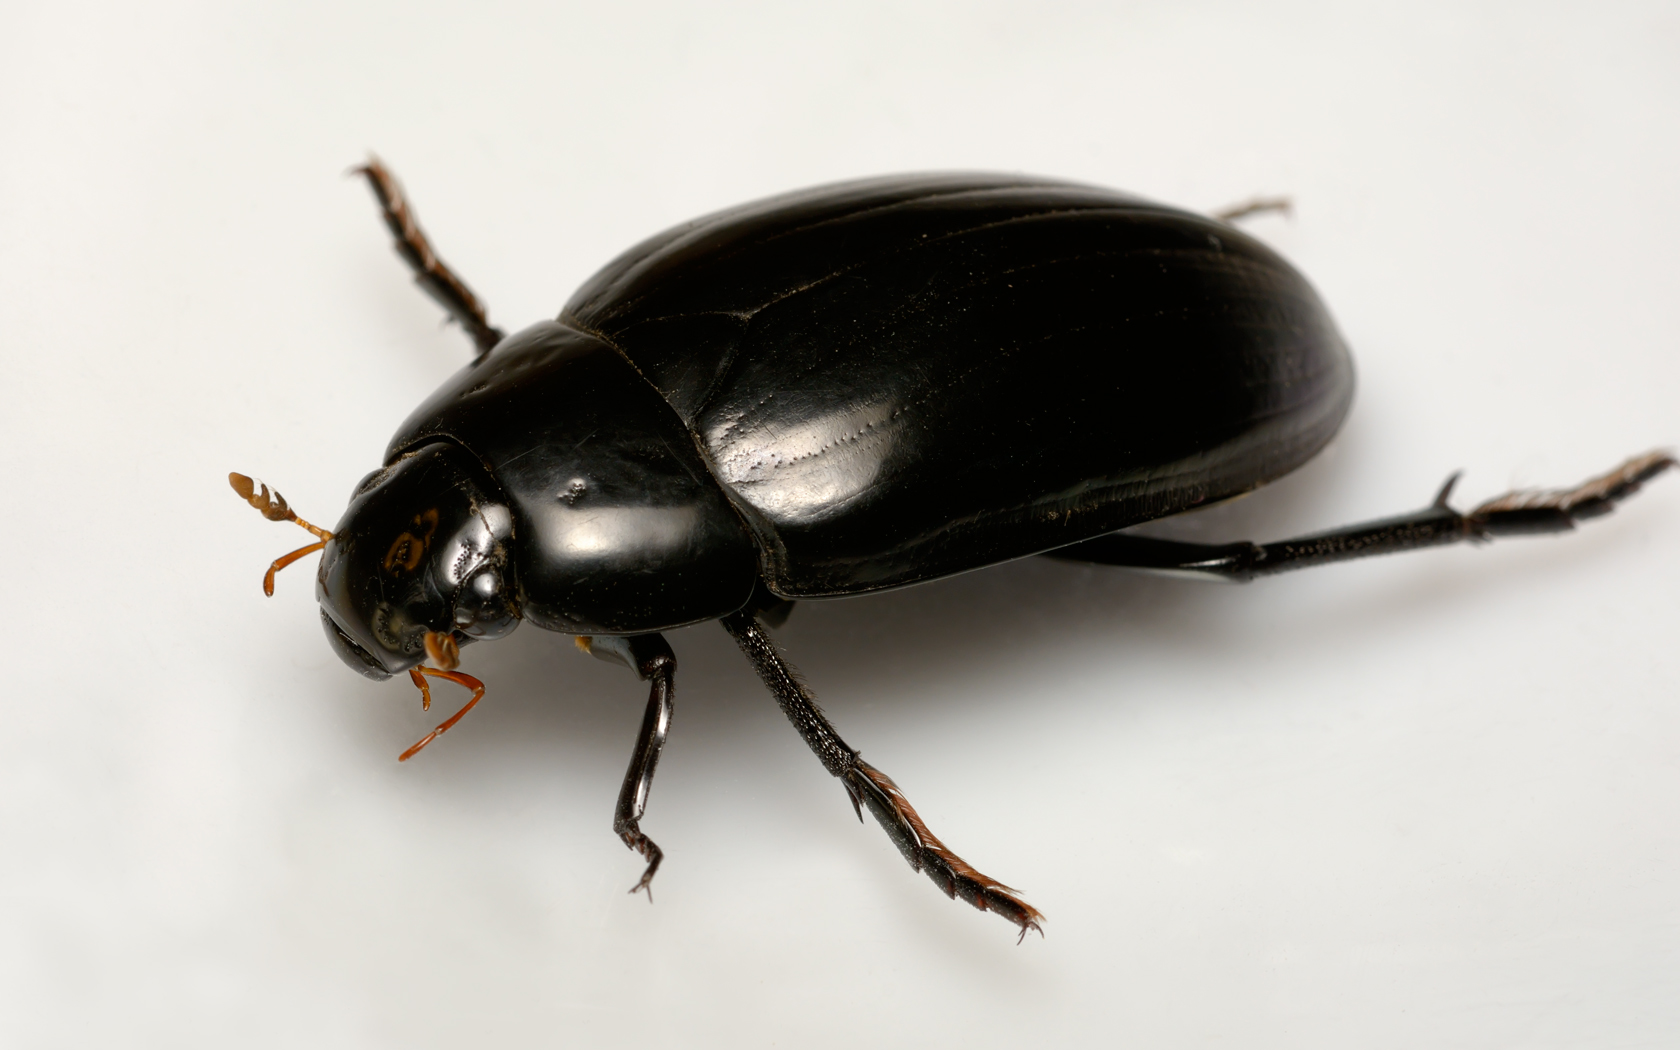 Снятся большие черные жуки